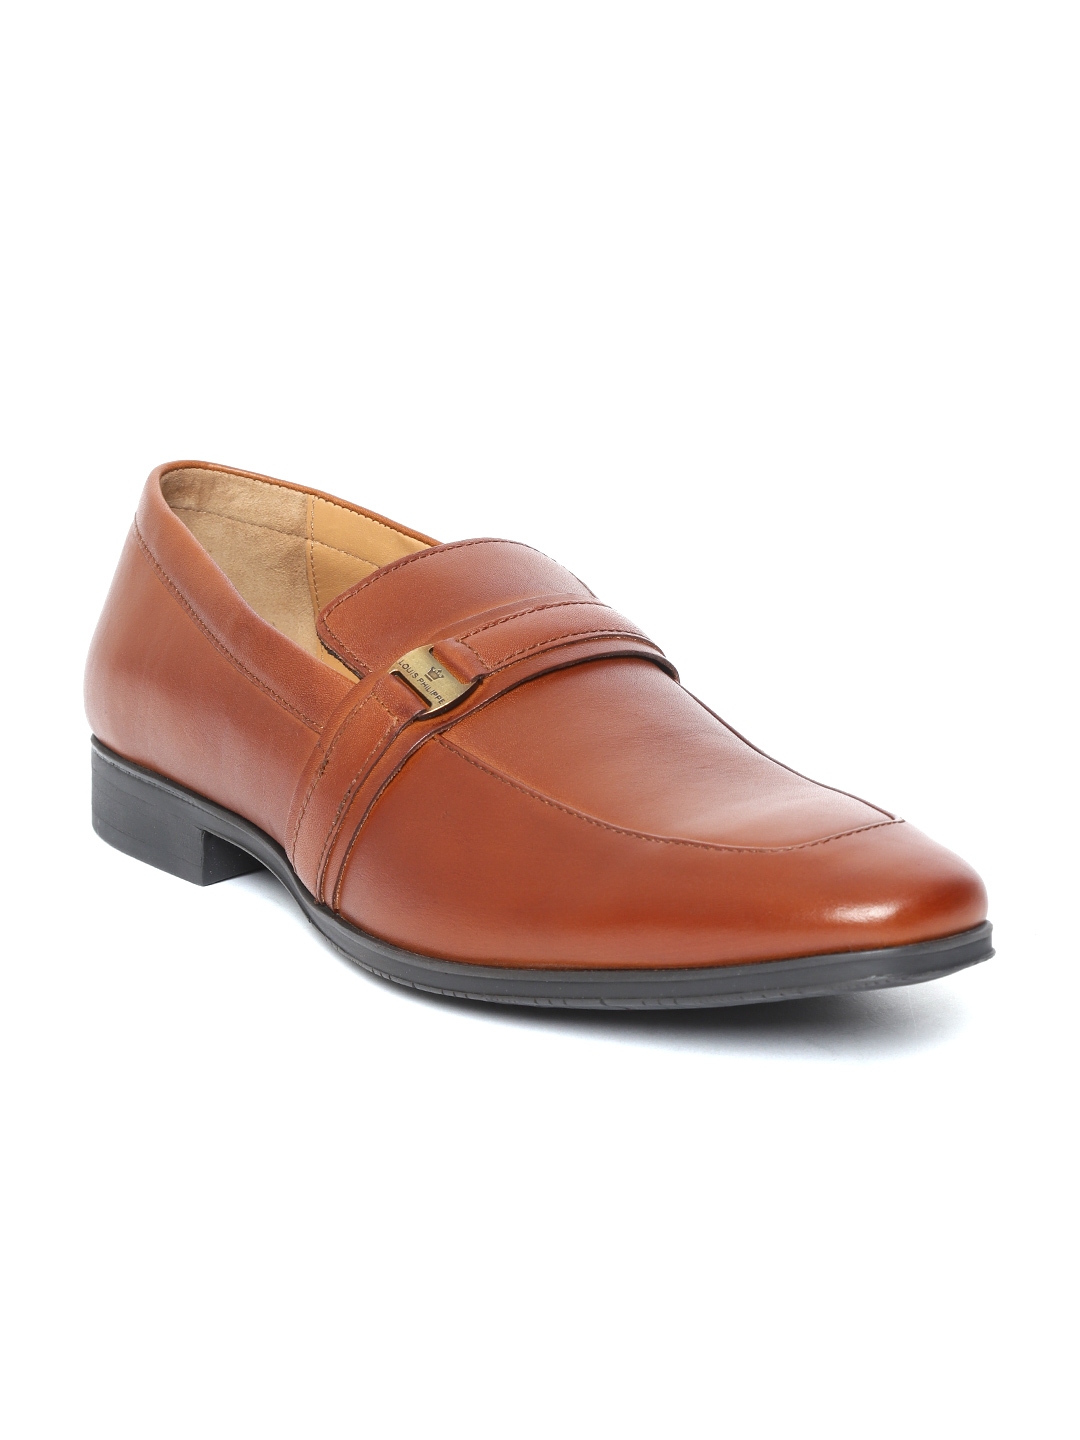 louis philippe men's formal shoes